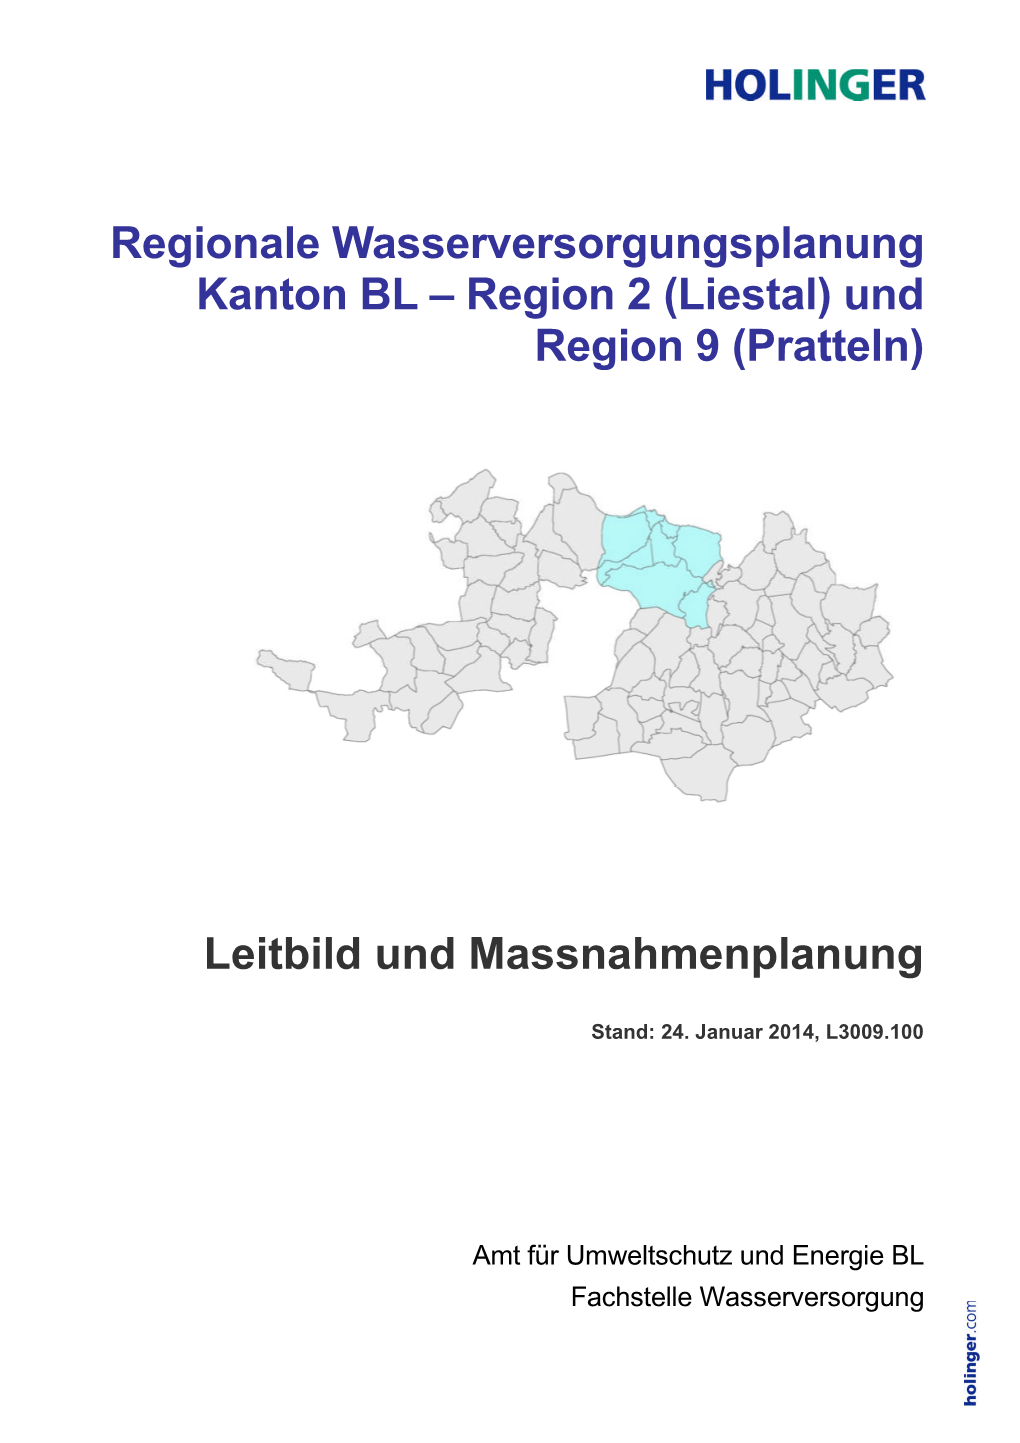 (Liestal) Und Region 9 (Pratteln) Leitbild Und Massnahmenplanung